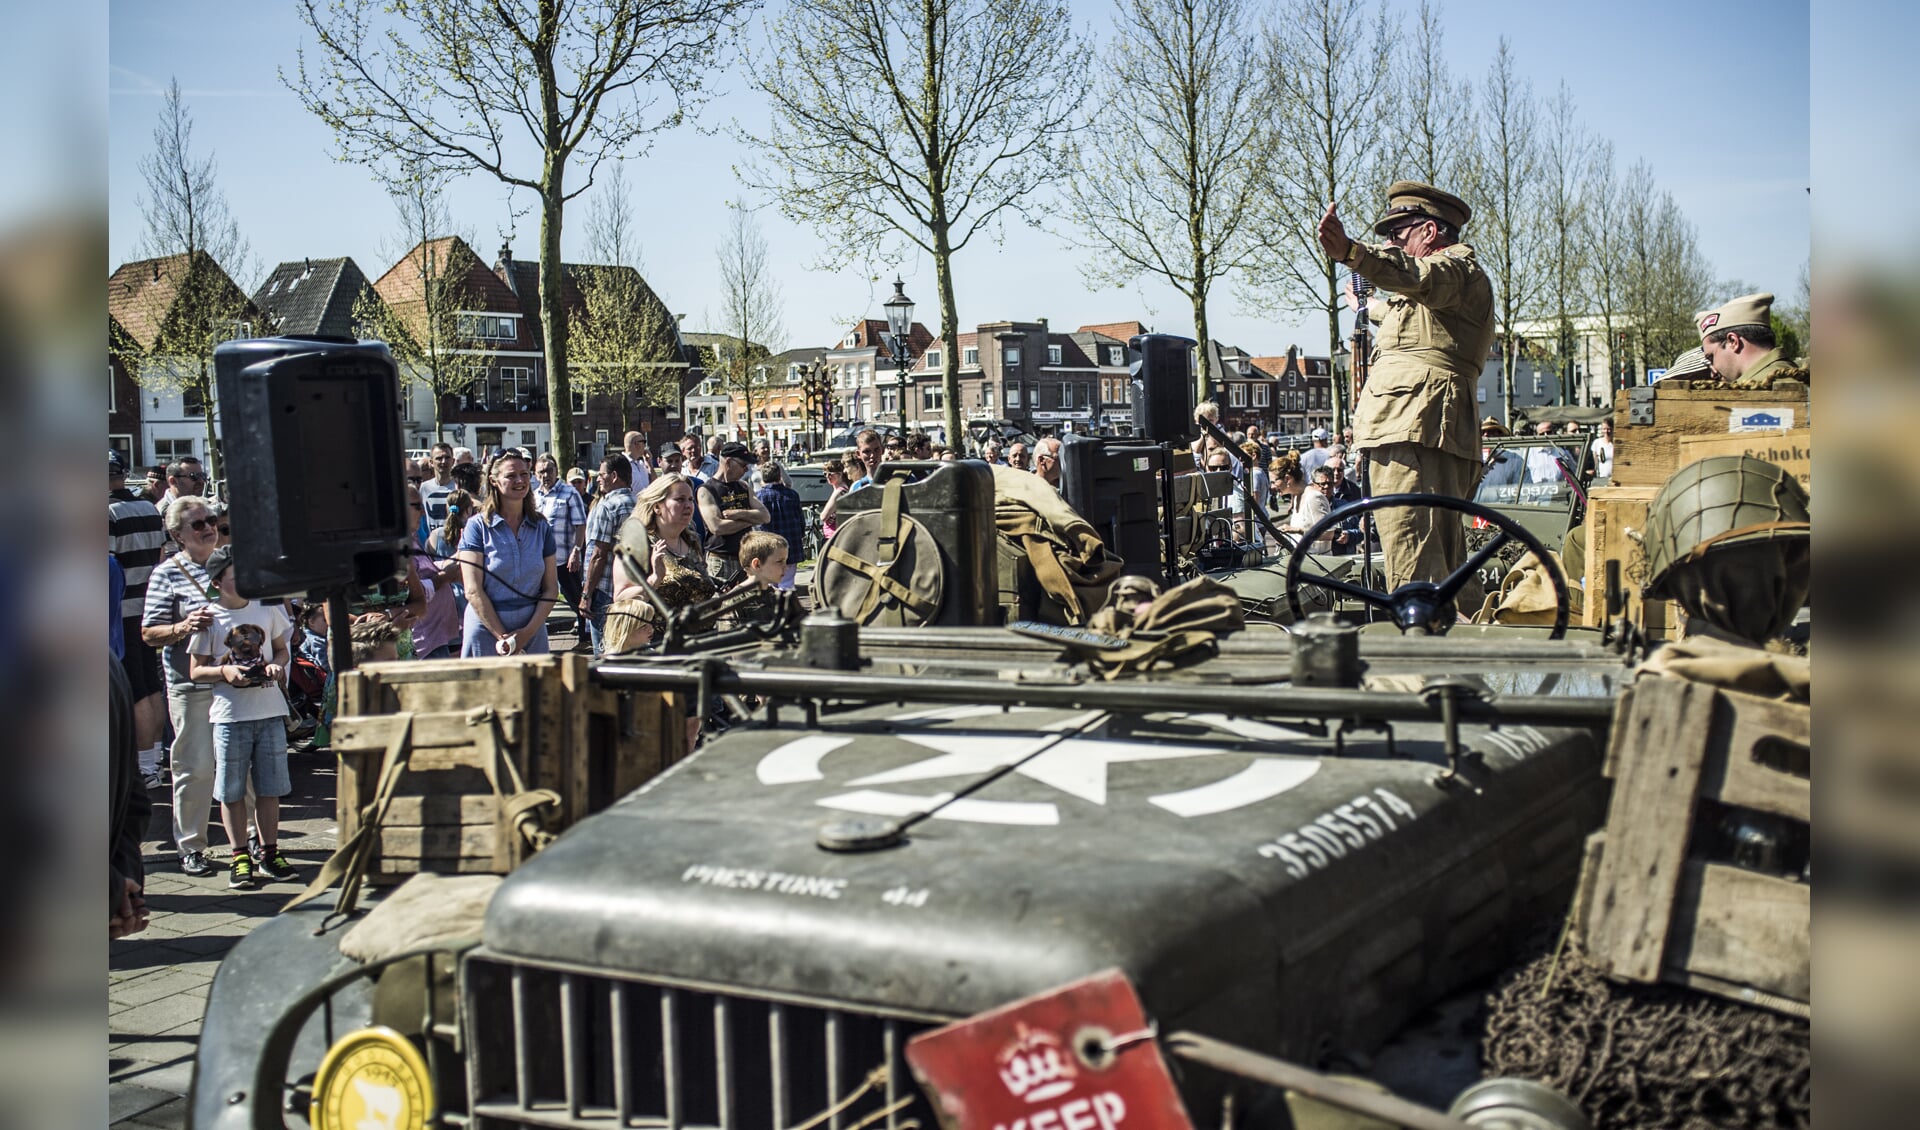 't Gooi Bevrijd op de Herengracht trok in 2016 veel publiek. 